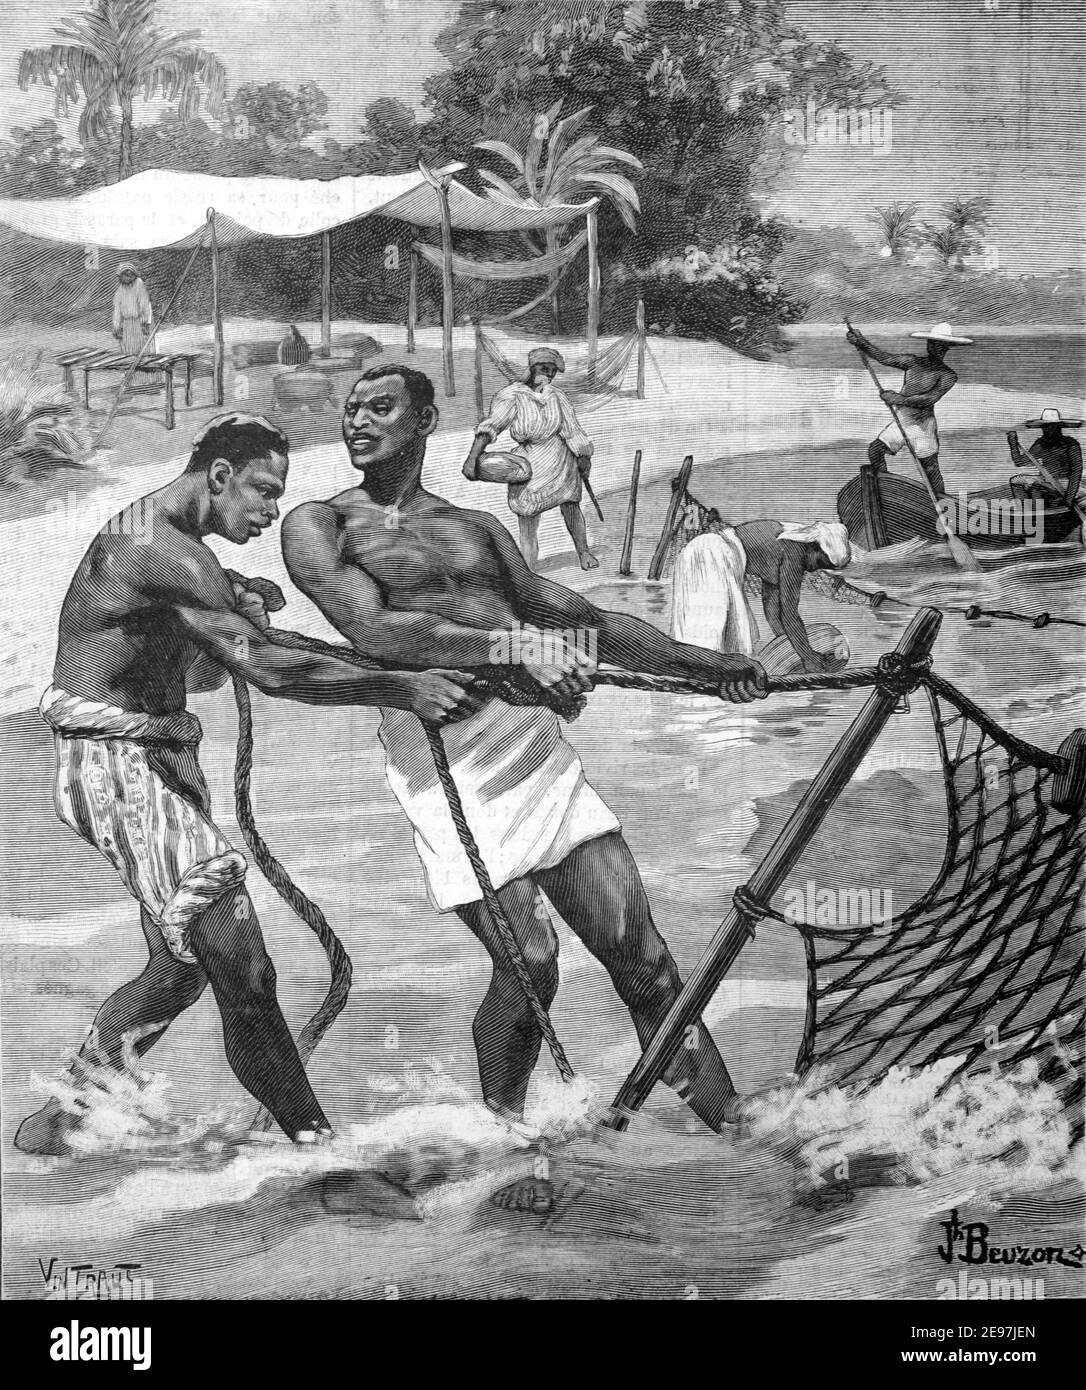 Küstenfischer oder Fischer Angeln in Französisch-Guayana Frankreich Süd America 1900 Vintage Illustration oder Gravur Stockfoto